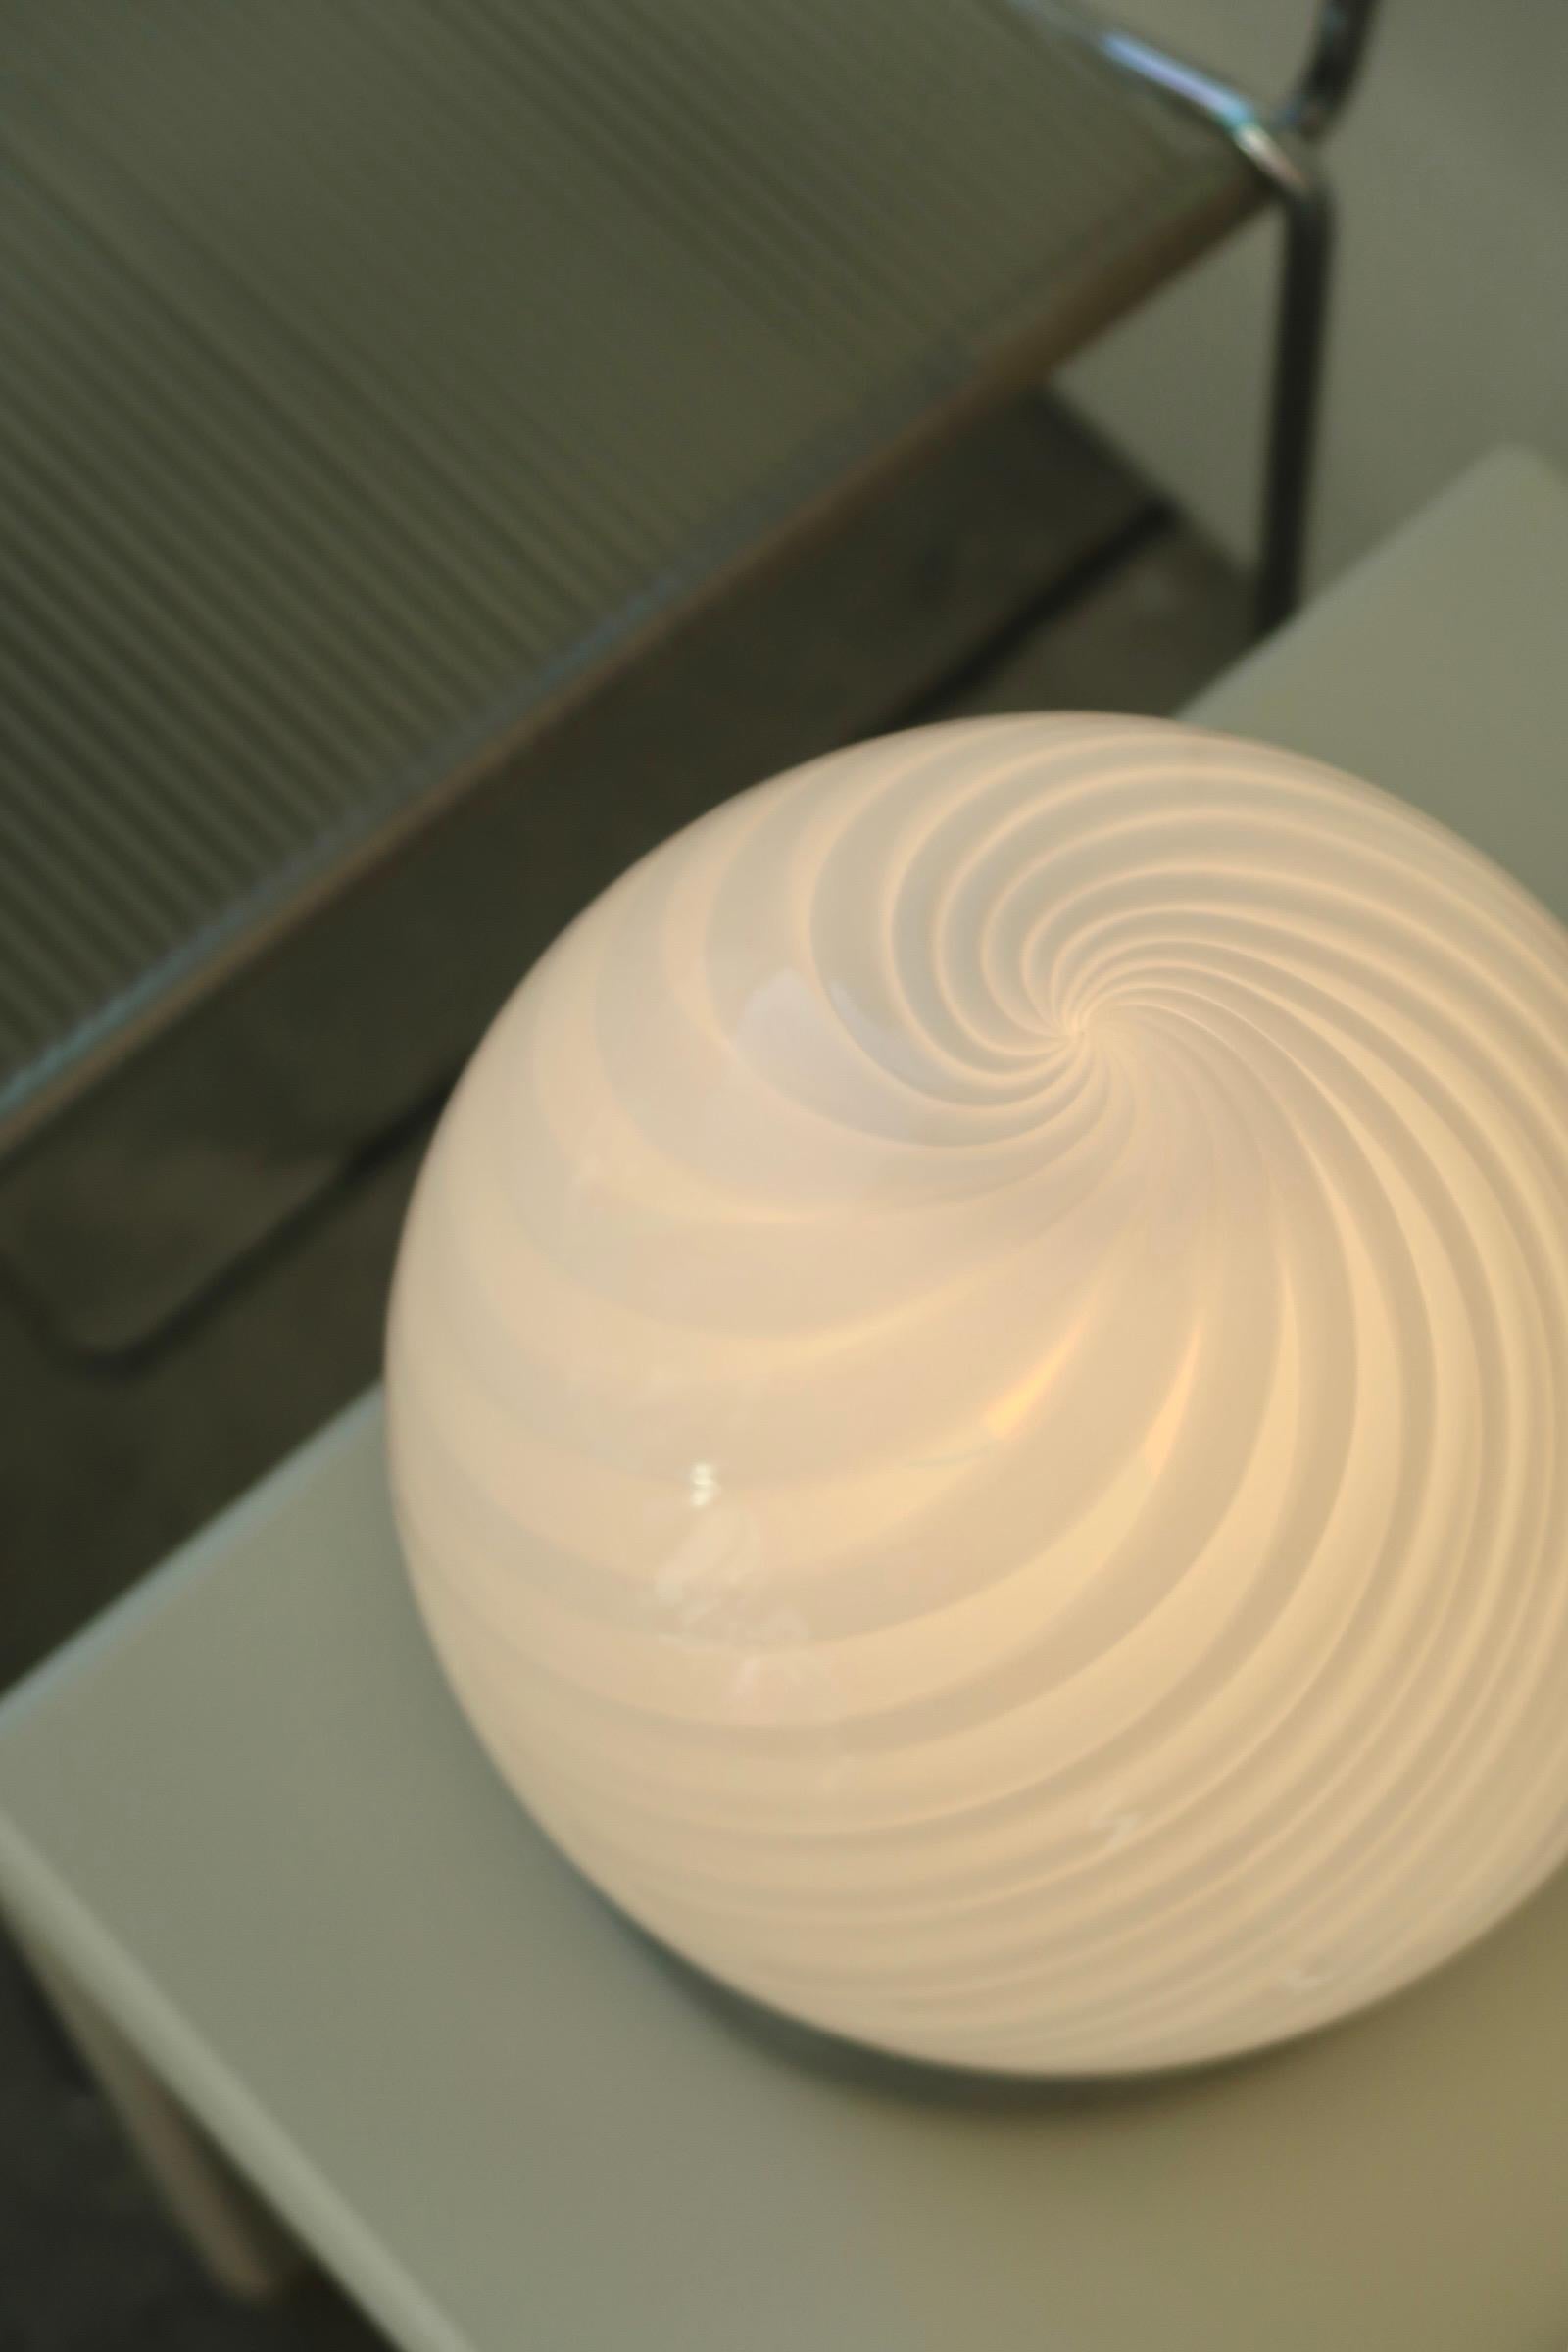 Vintage Murano lampe de table, soufflée à la bouche en verre blanc avec tourbillon. Fabriqué à la main en Italie, dans les années 1970, et livré avec un nouveau cordon blanc.

H:23 cm D:20 cm.

